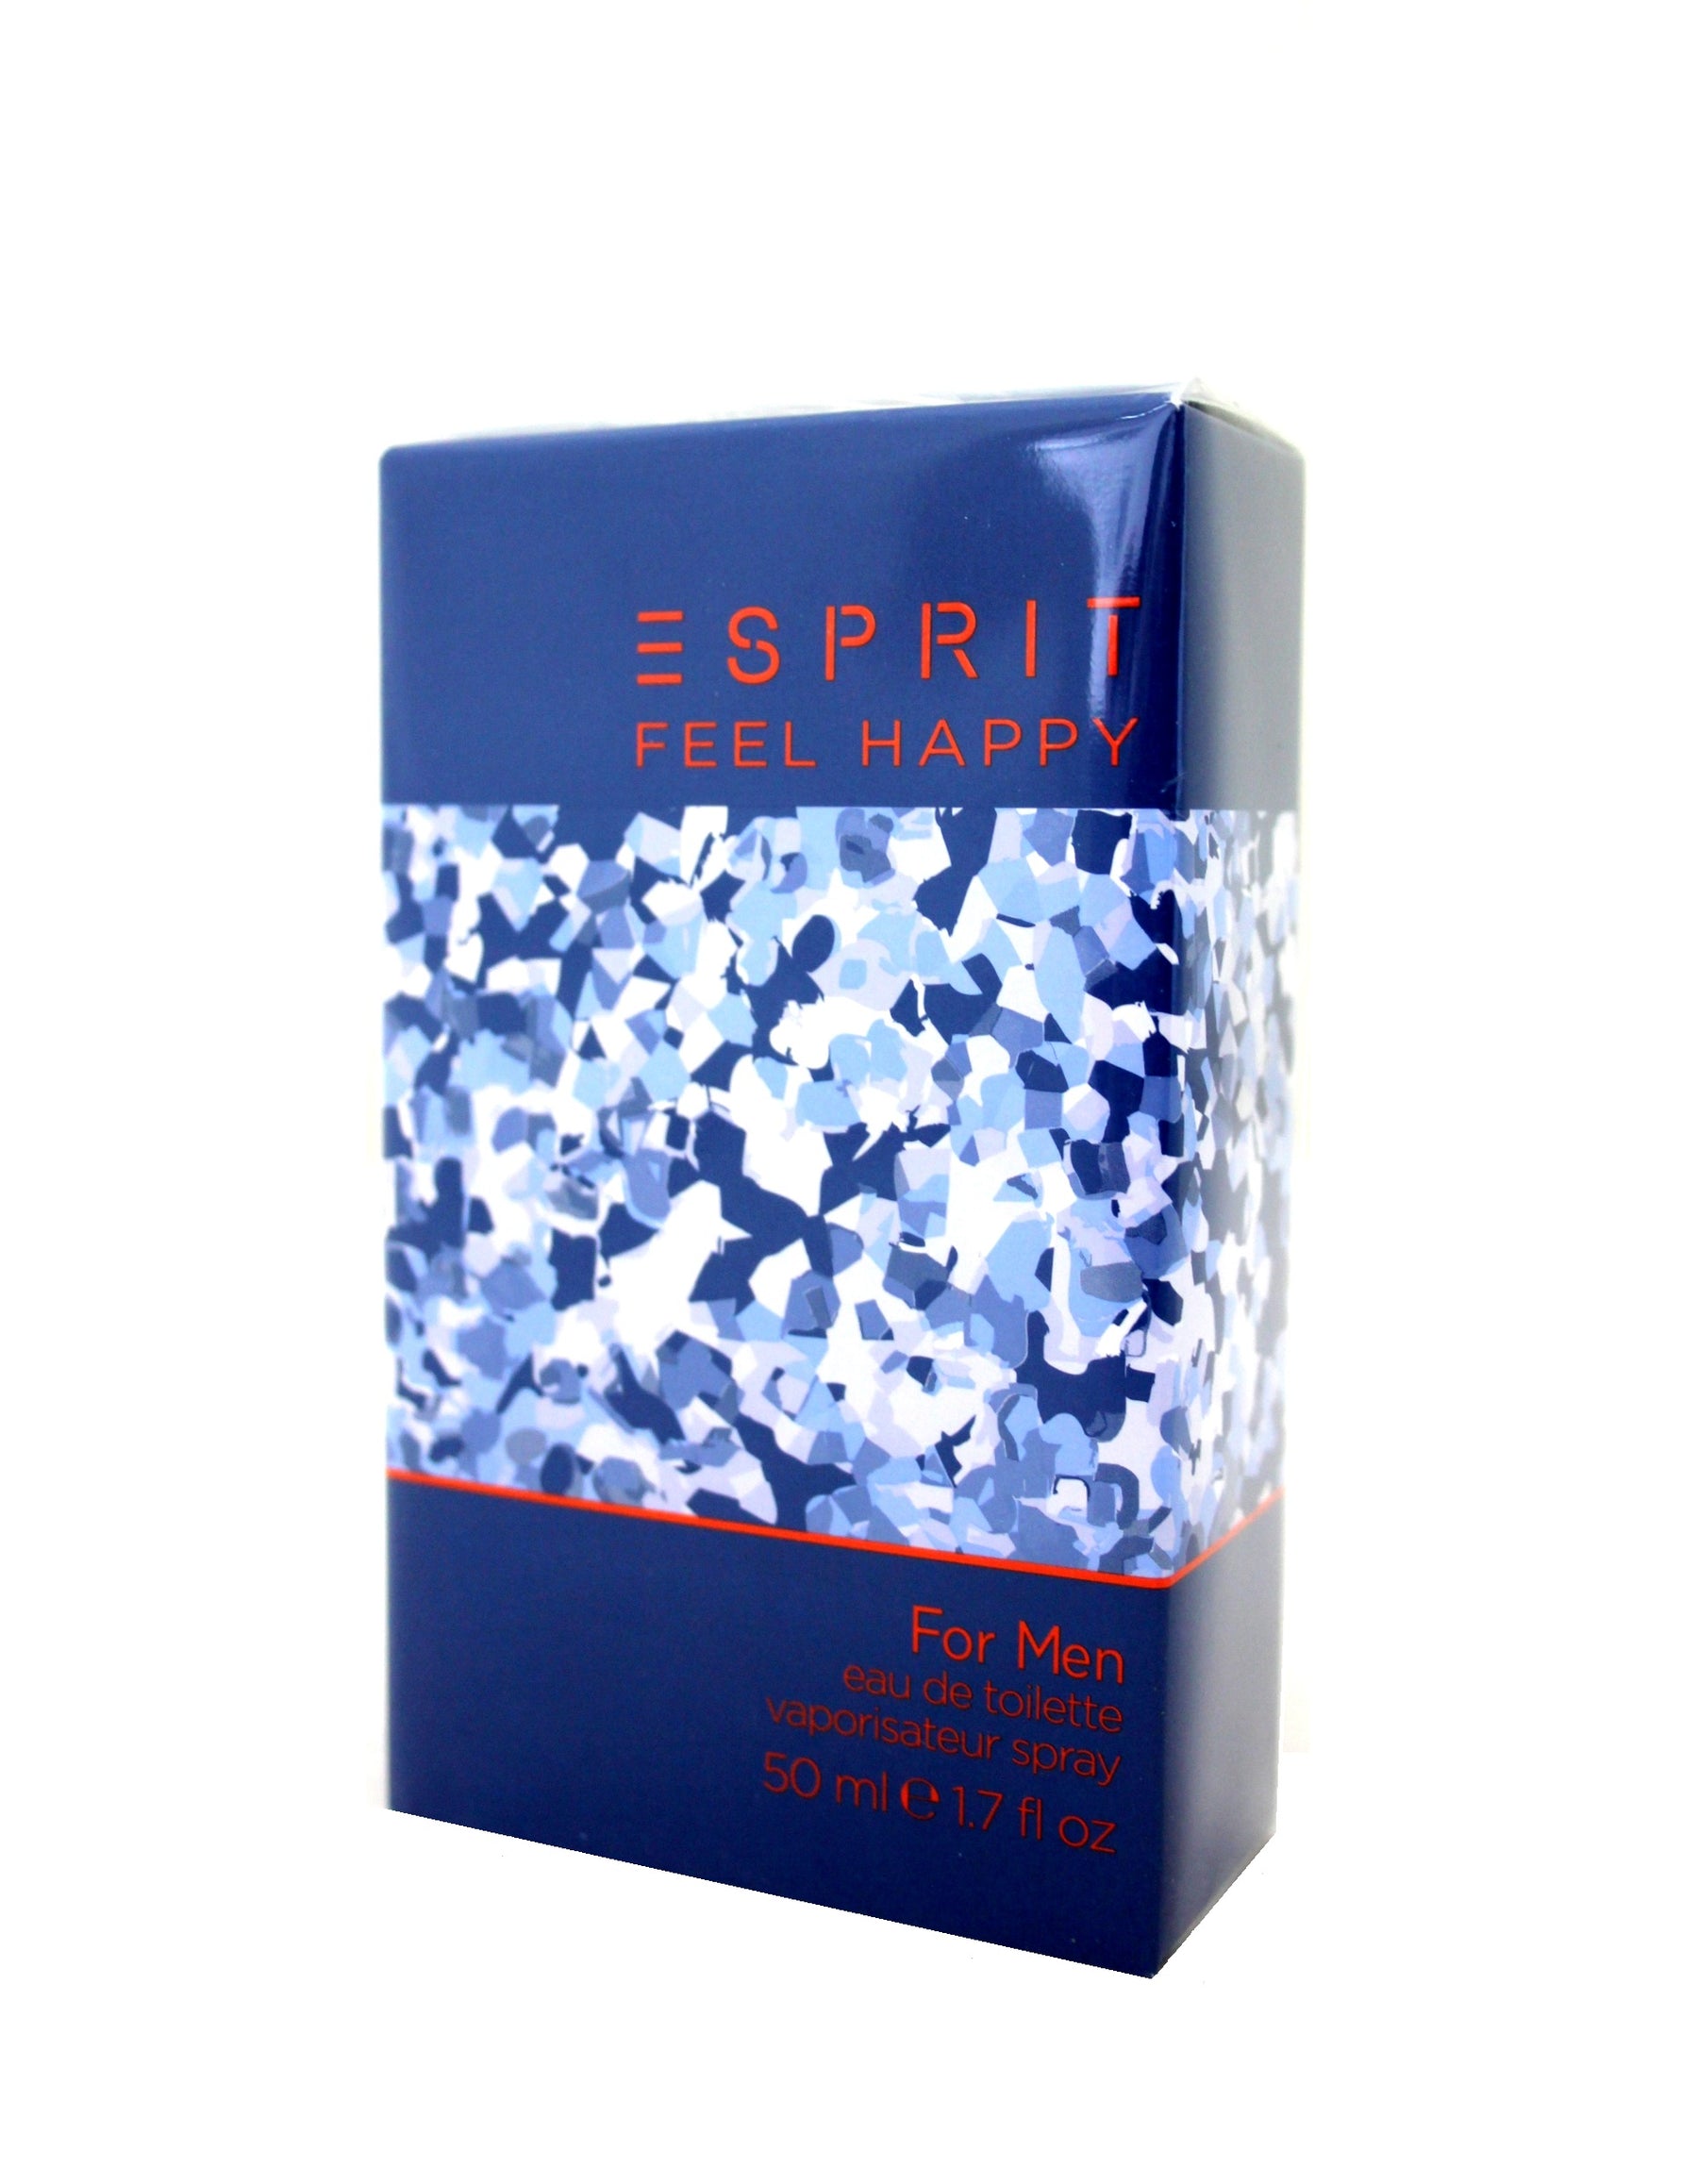 Esprit Feel Happy for Men Eau de Toilette 50 ml